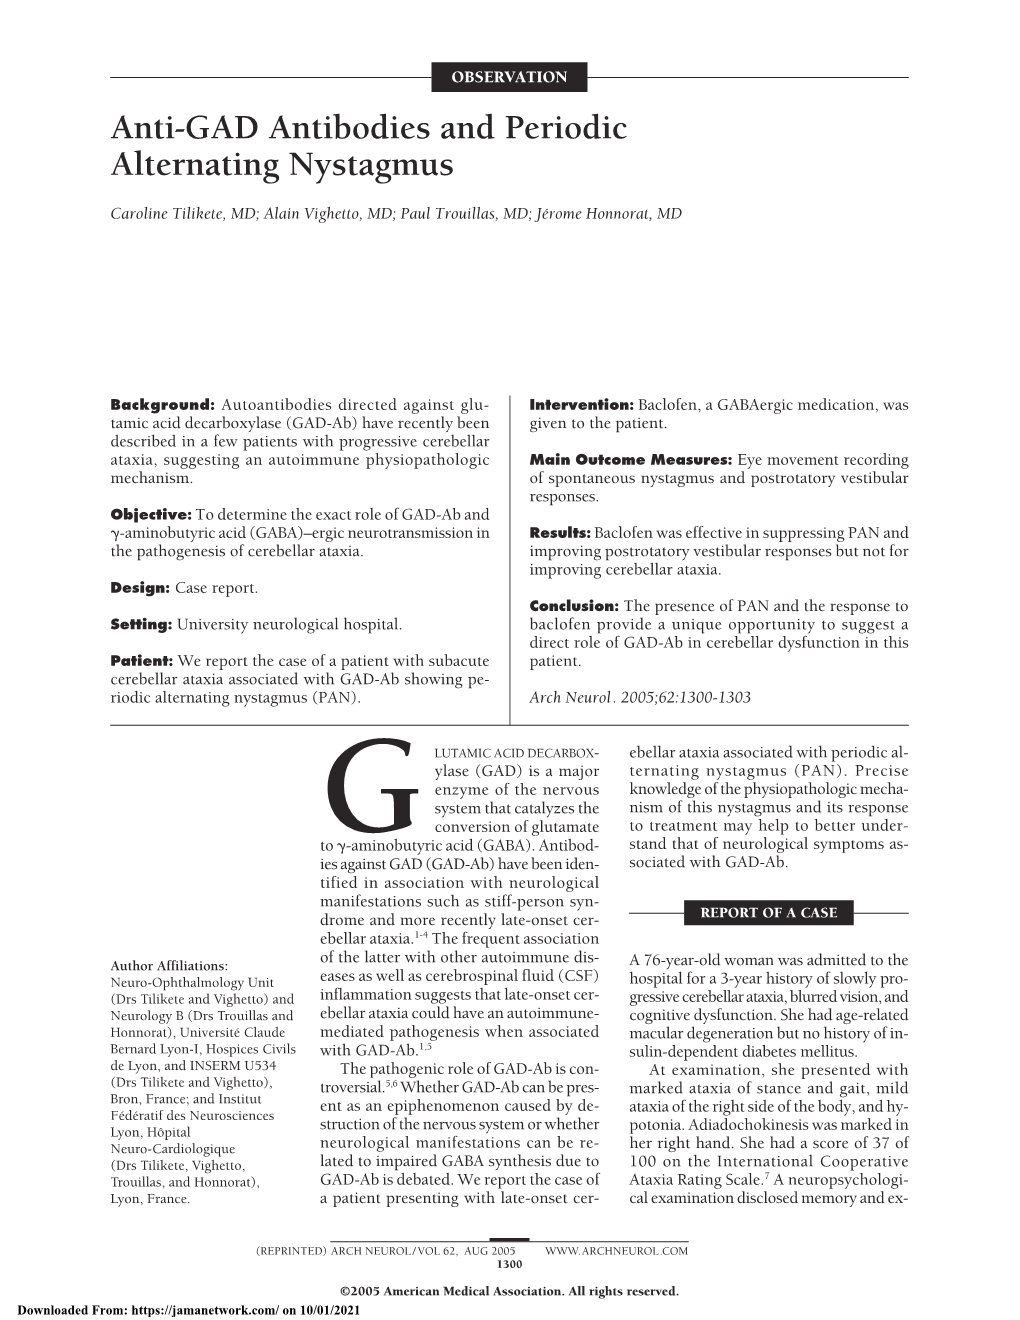 Anti-GAD Antibodies and Periodic Alternating Nystagmus